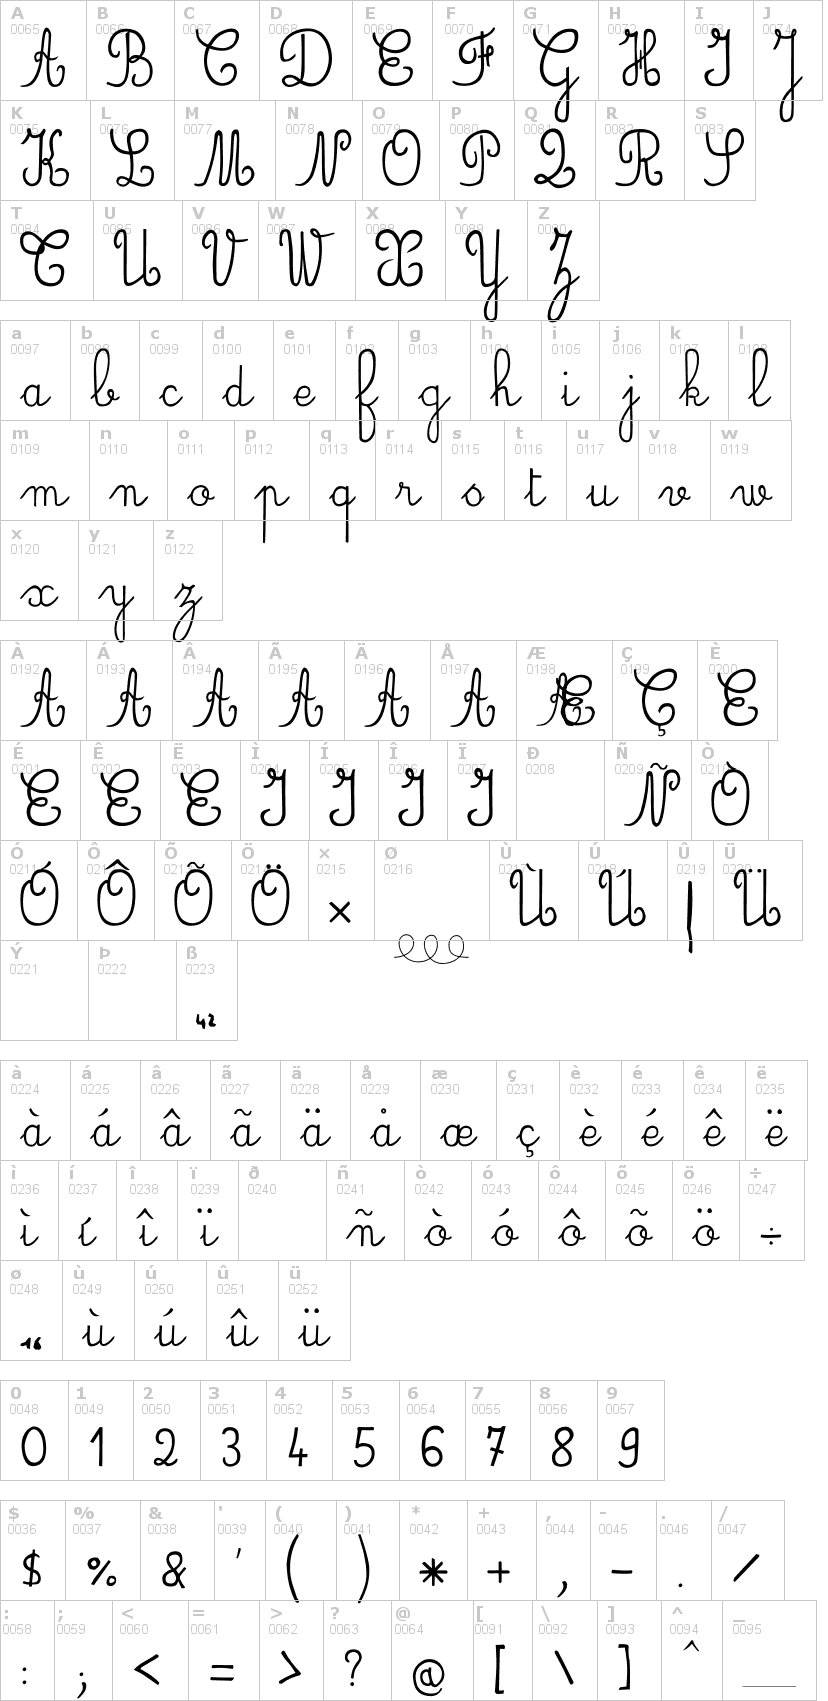 Lettere dell'alfabeto del font jbcursive con le quali è possibile realizzare adesivi prespaziati